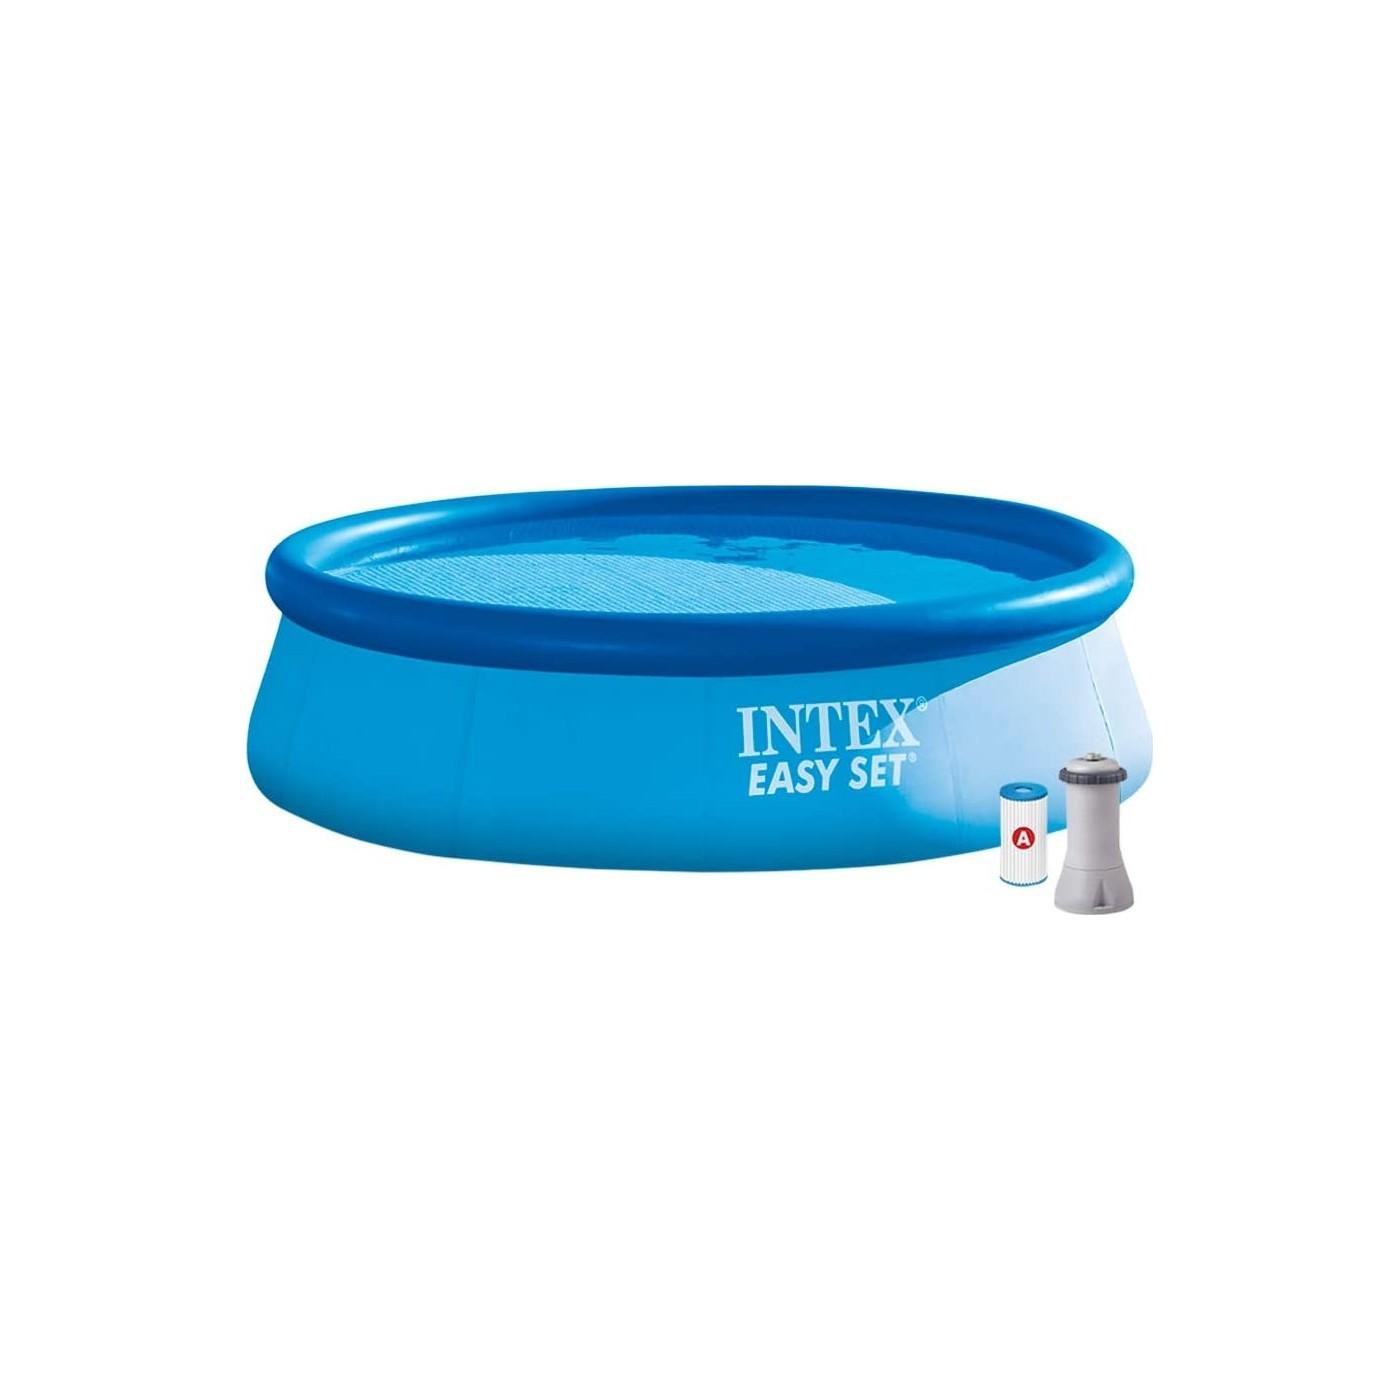 INTEX Bazen na naduvavanje sa pumpom Easy Set 366x76 cm plavi